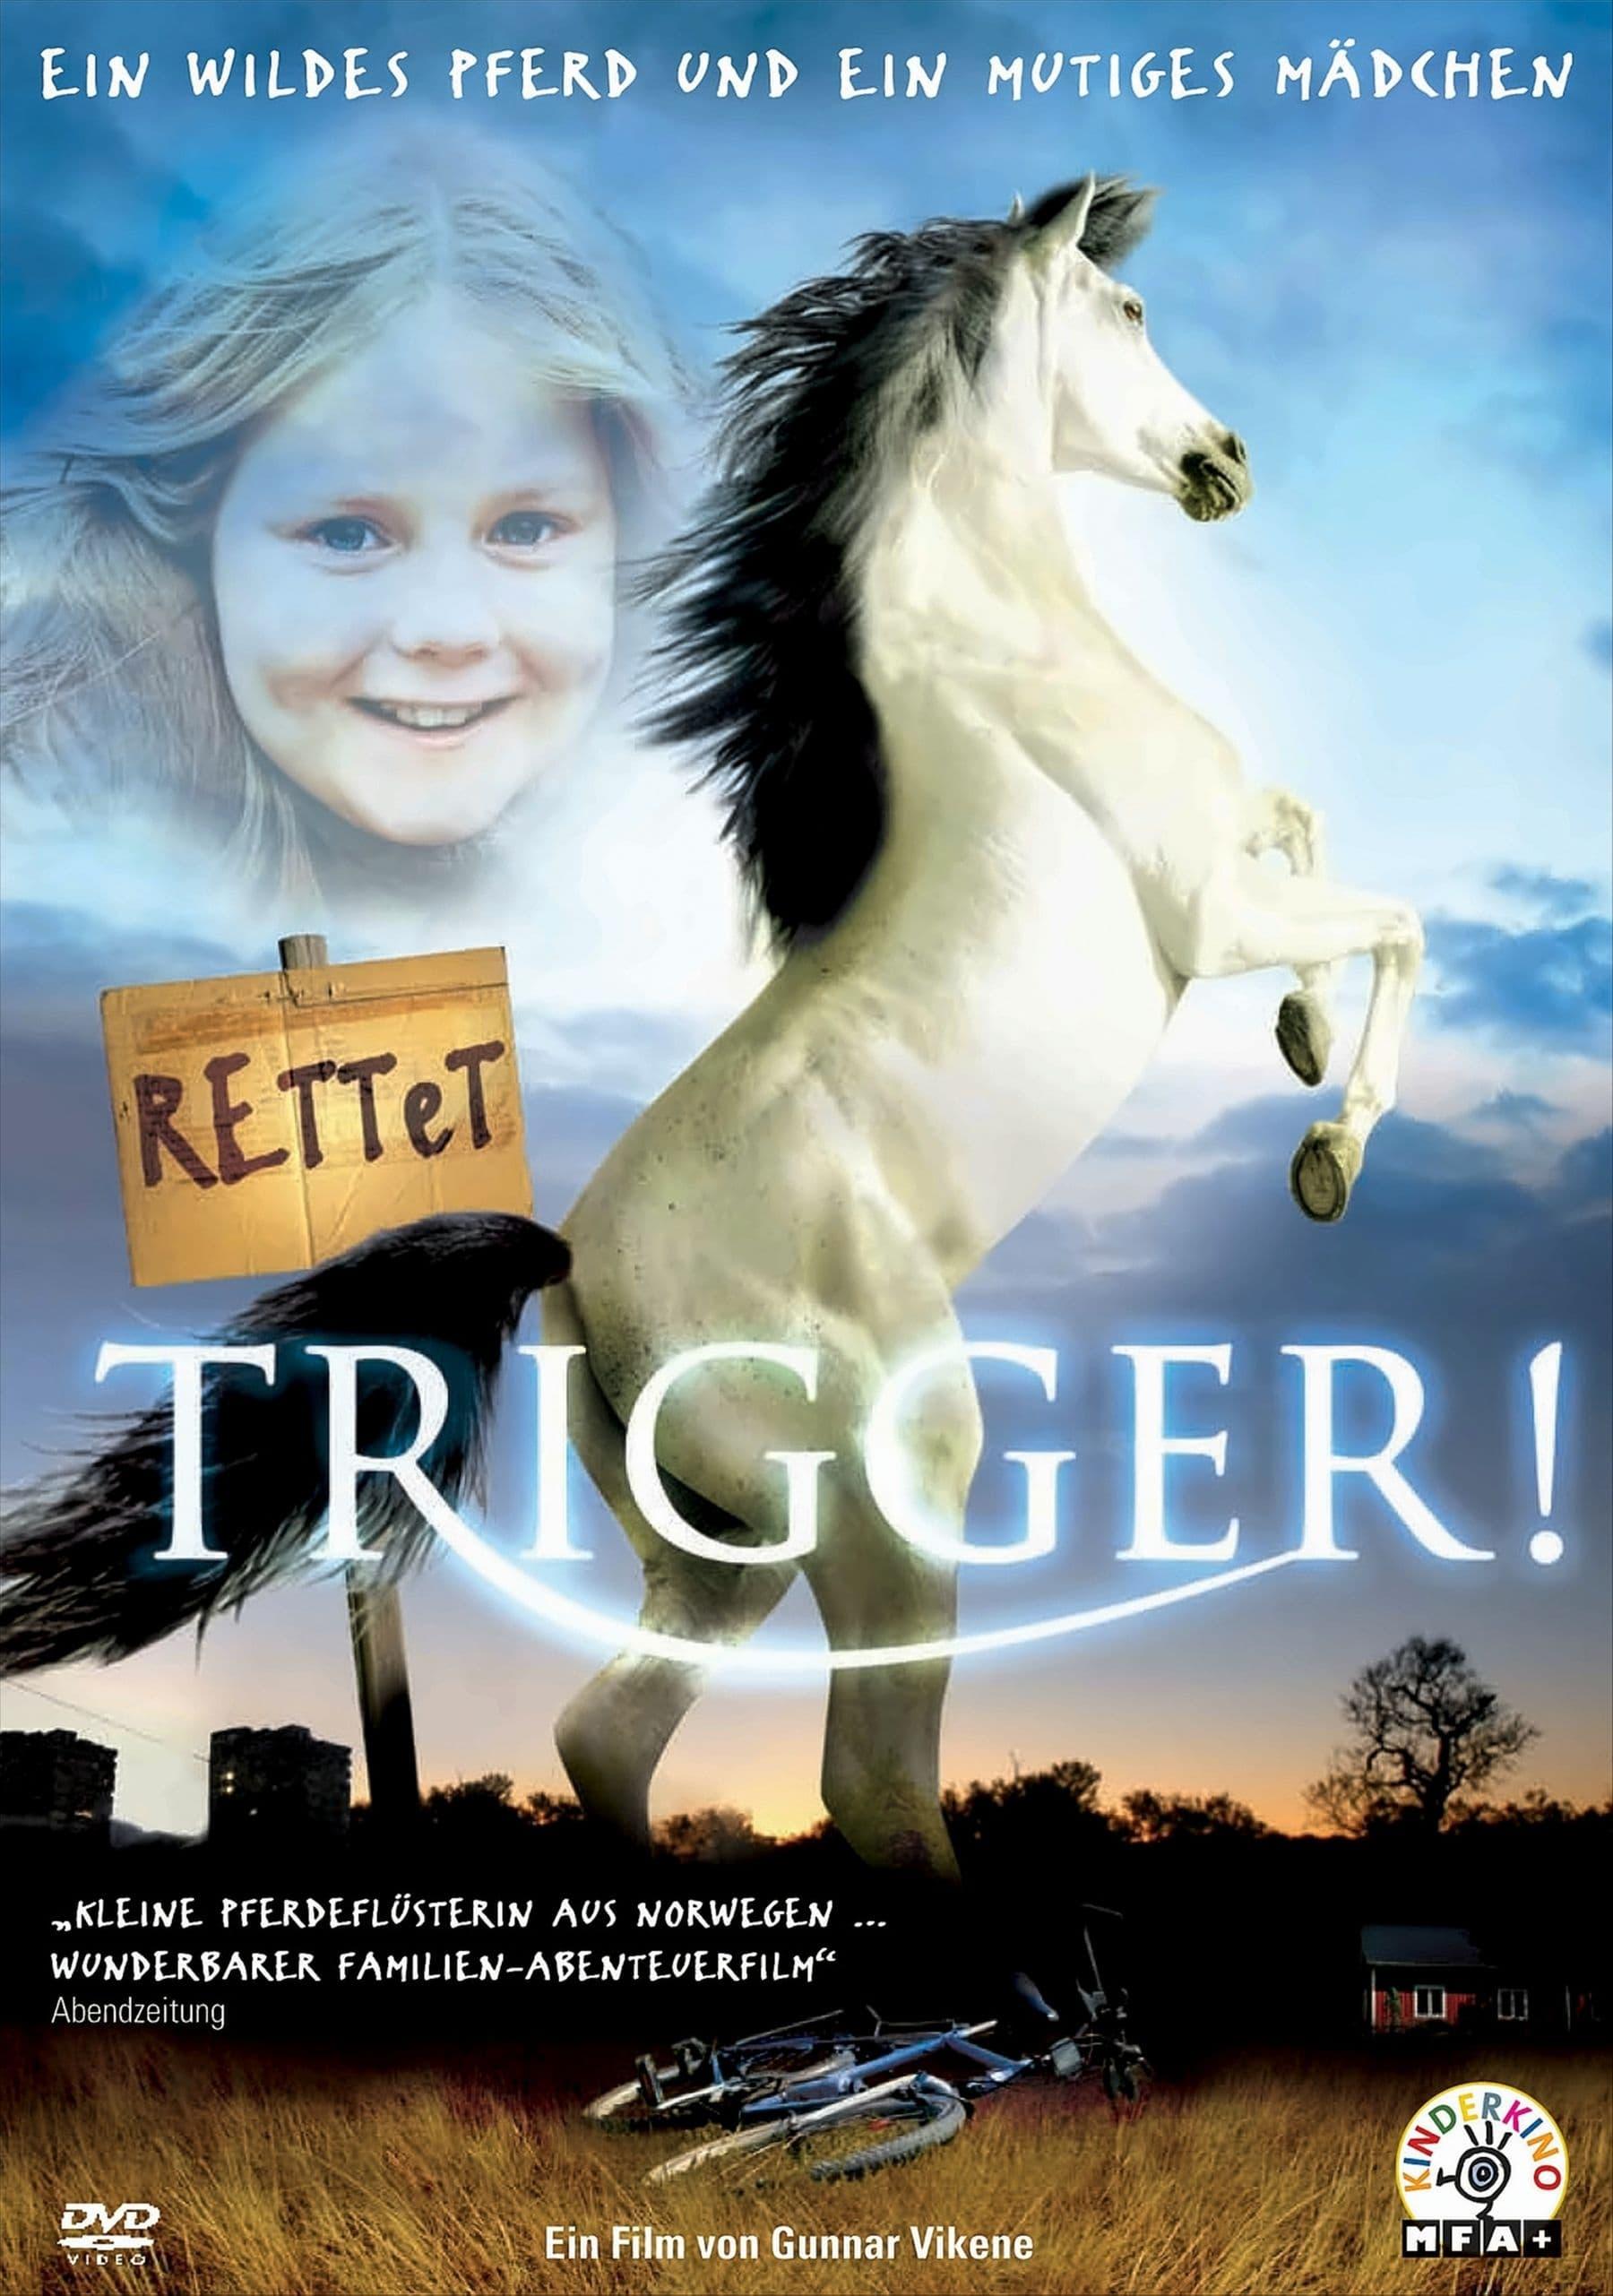 Rettet Trigger! poster